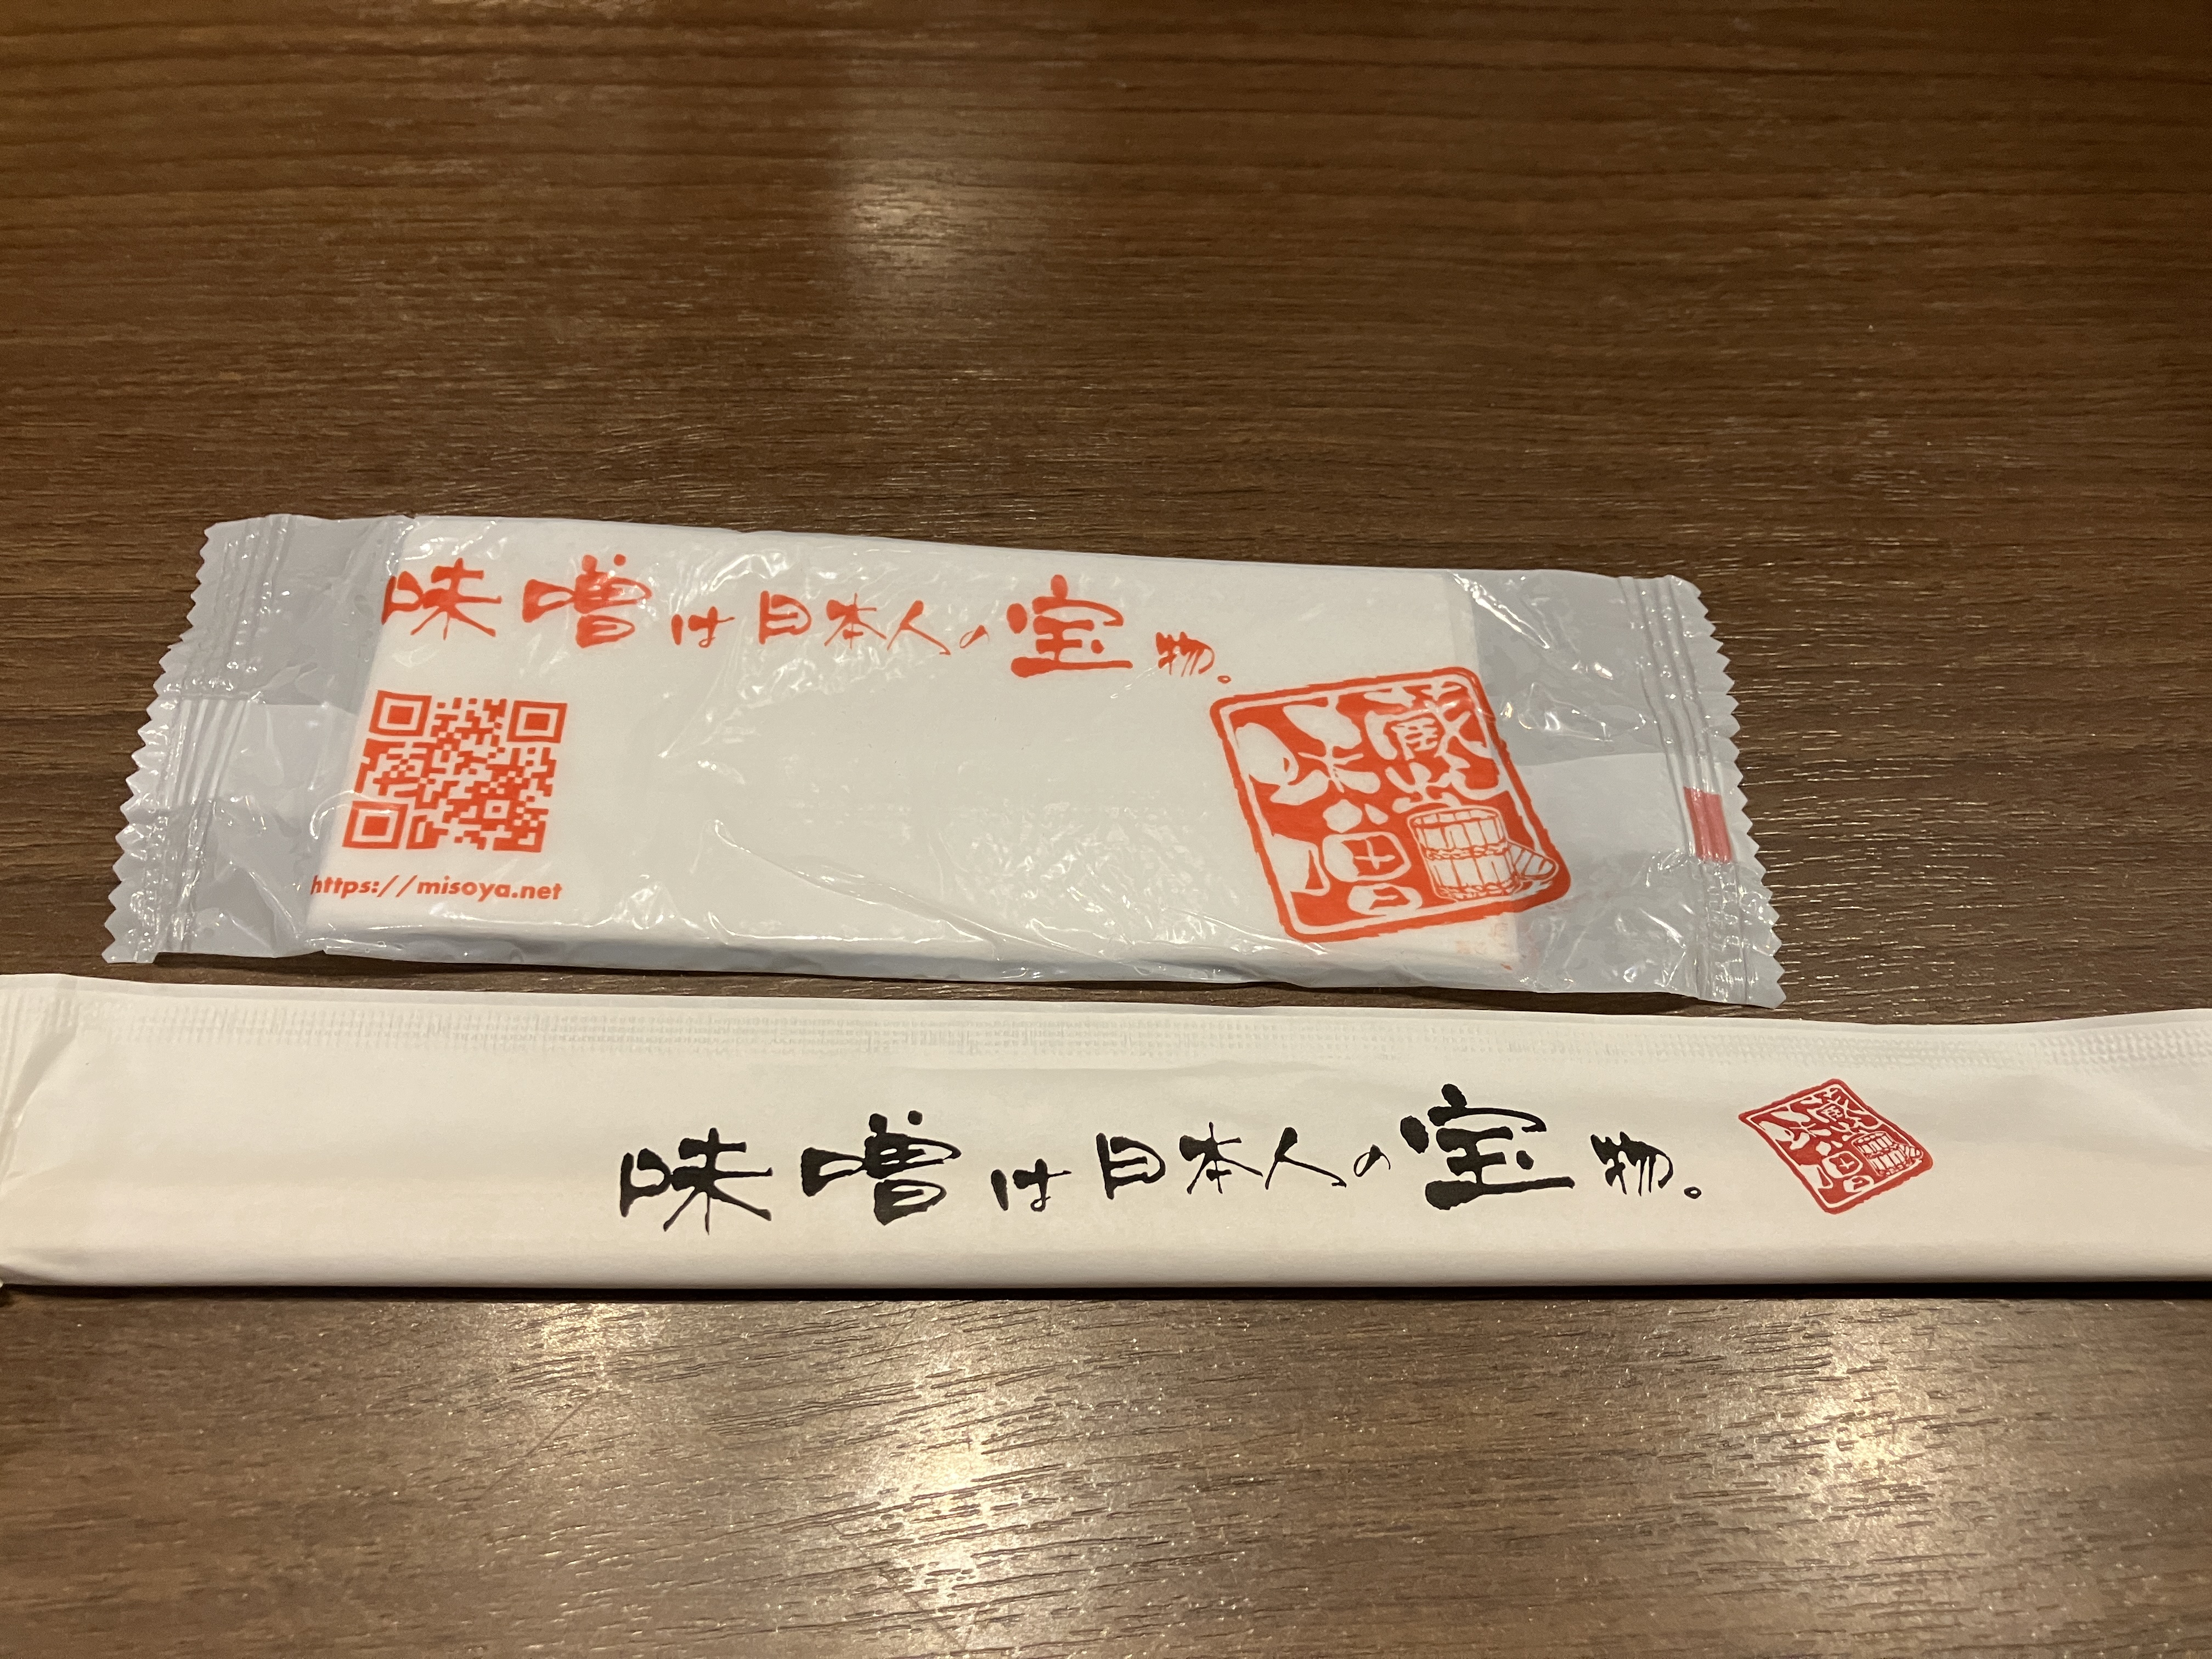 麺場 田所商店のスパイス系味噌らーめん3種食べ比べの試食に当選しました。